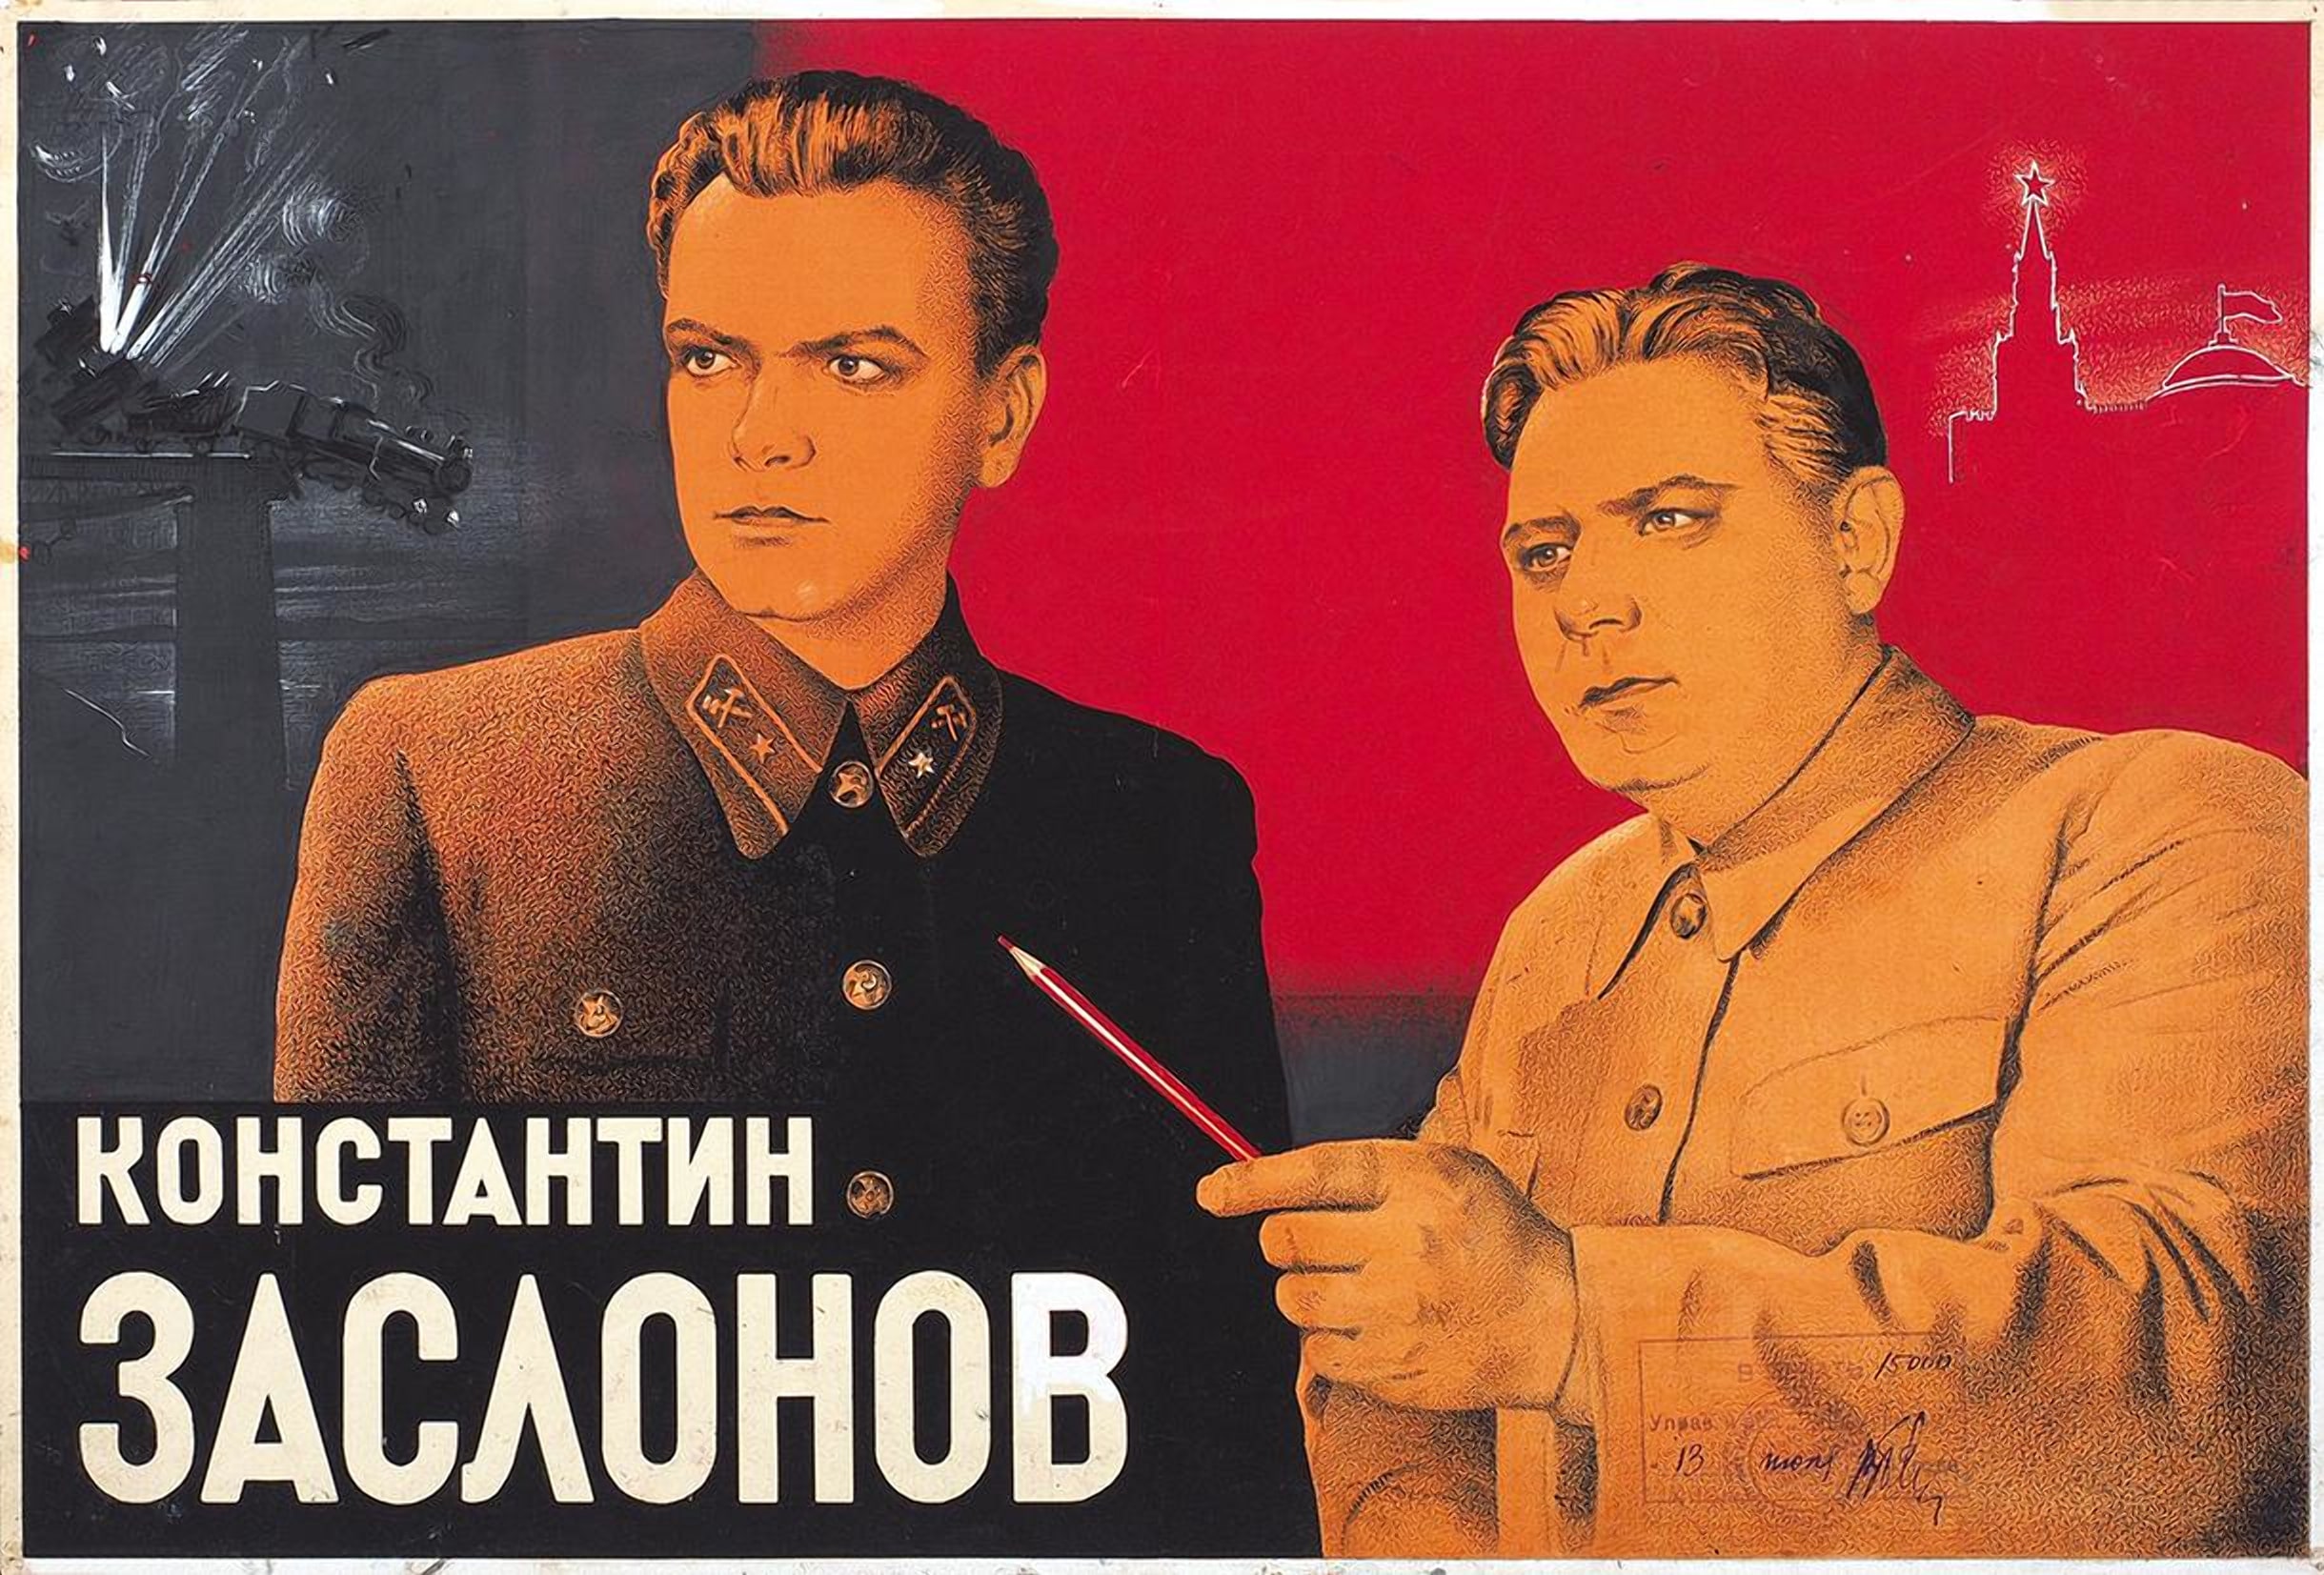 Константин Заслонов - фильм 1949 года